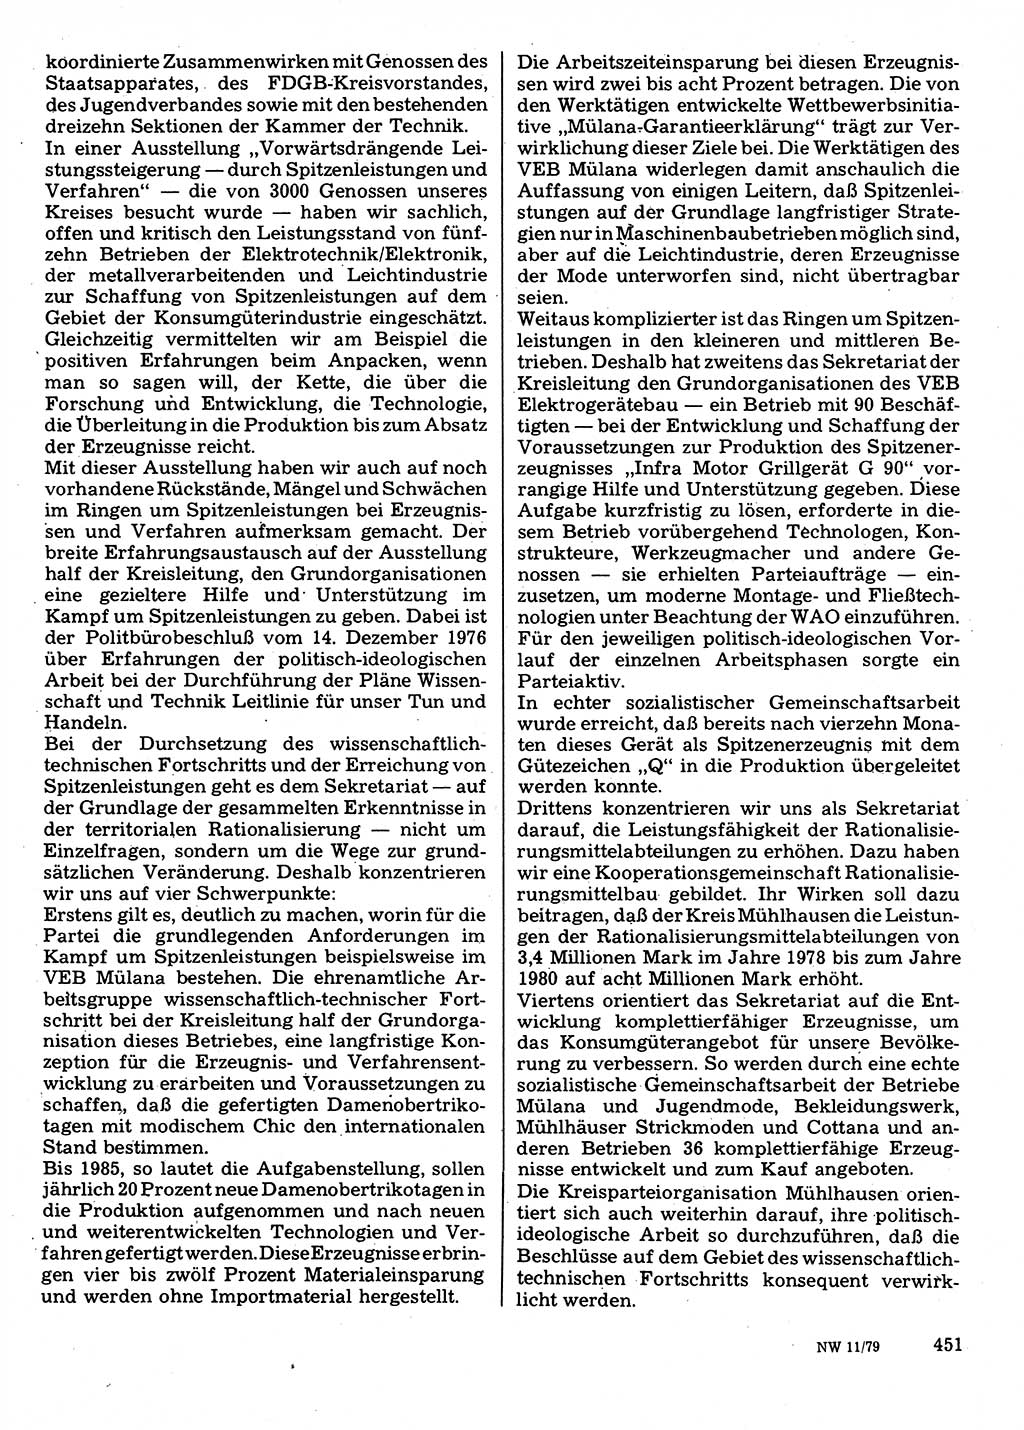 Neuer Weg (NW), Organ des Zentralkomitees (ZK) der SED (Sozialistische Einheitspartei Deutschlands) für Fragen des Parteilebens, 34. Jahrgang [Deutsche Demokratische Republik (DDR)] 1979, Seite 451 (NW ZK SED DDR 1979, S. 451)